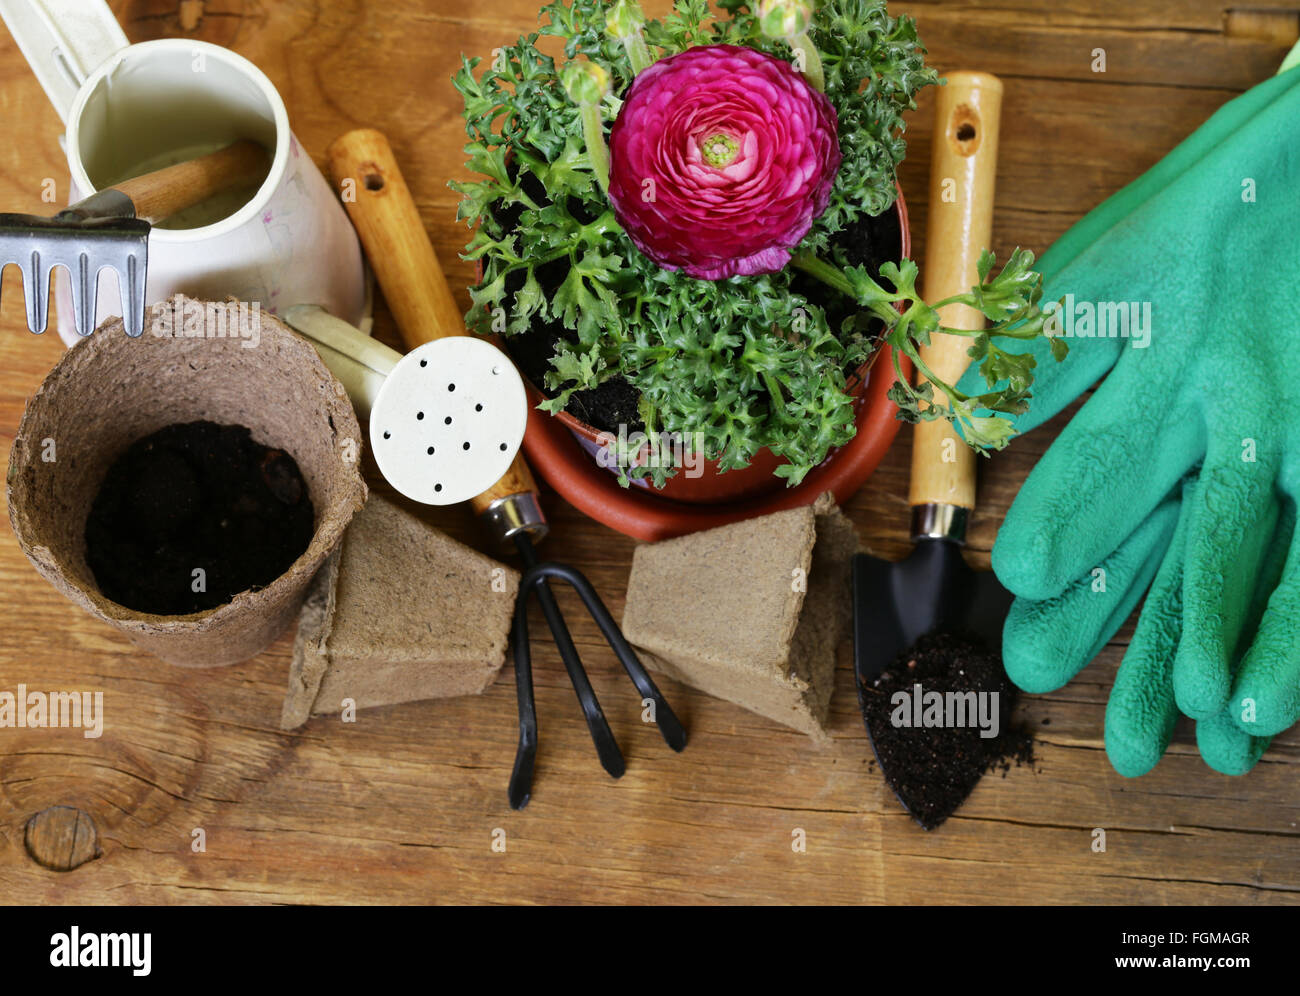 Concetto di giardinaggio - ranuncolo fiore in una pentola e attrezzi da giardino Foto Stock